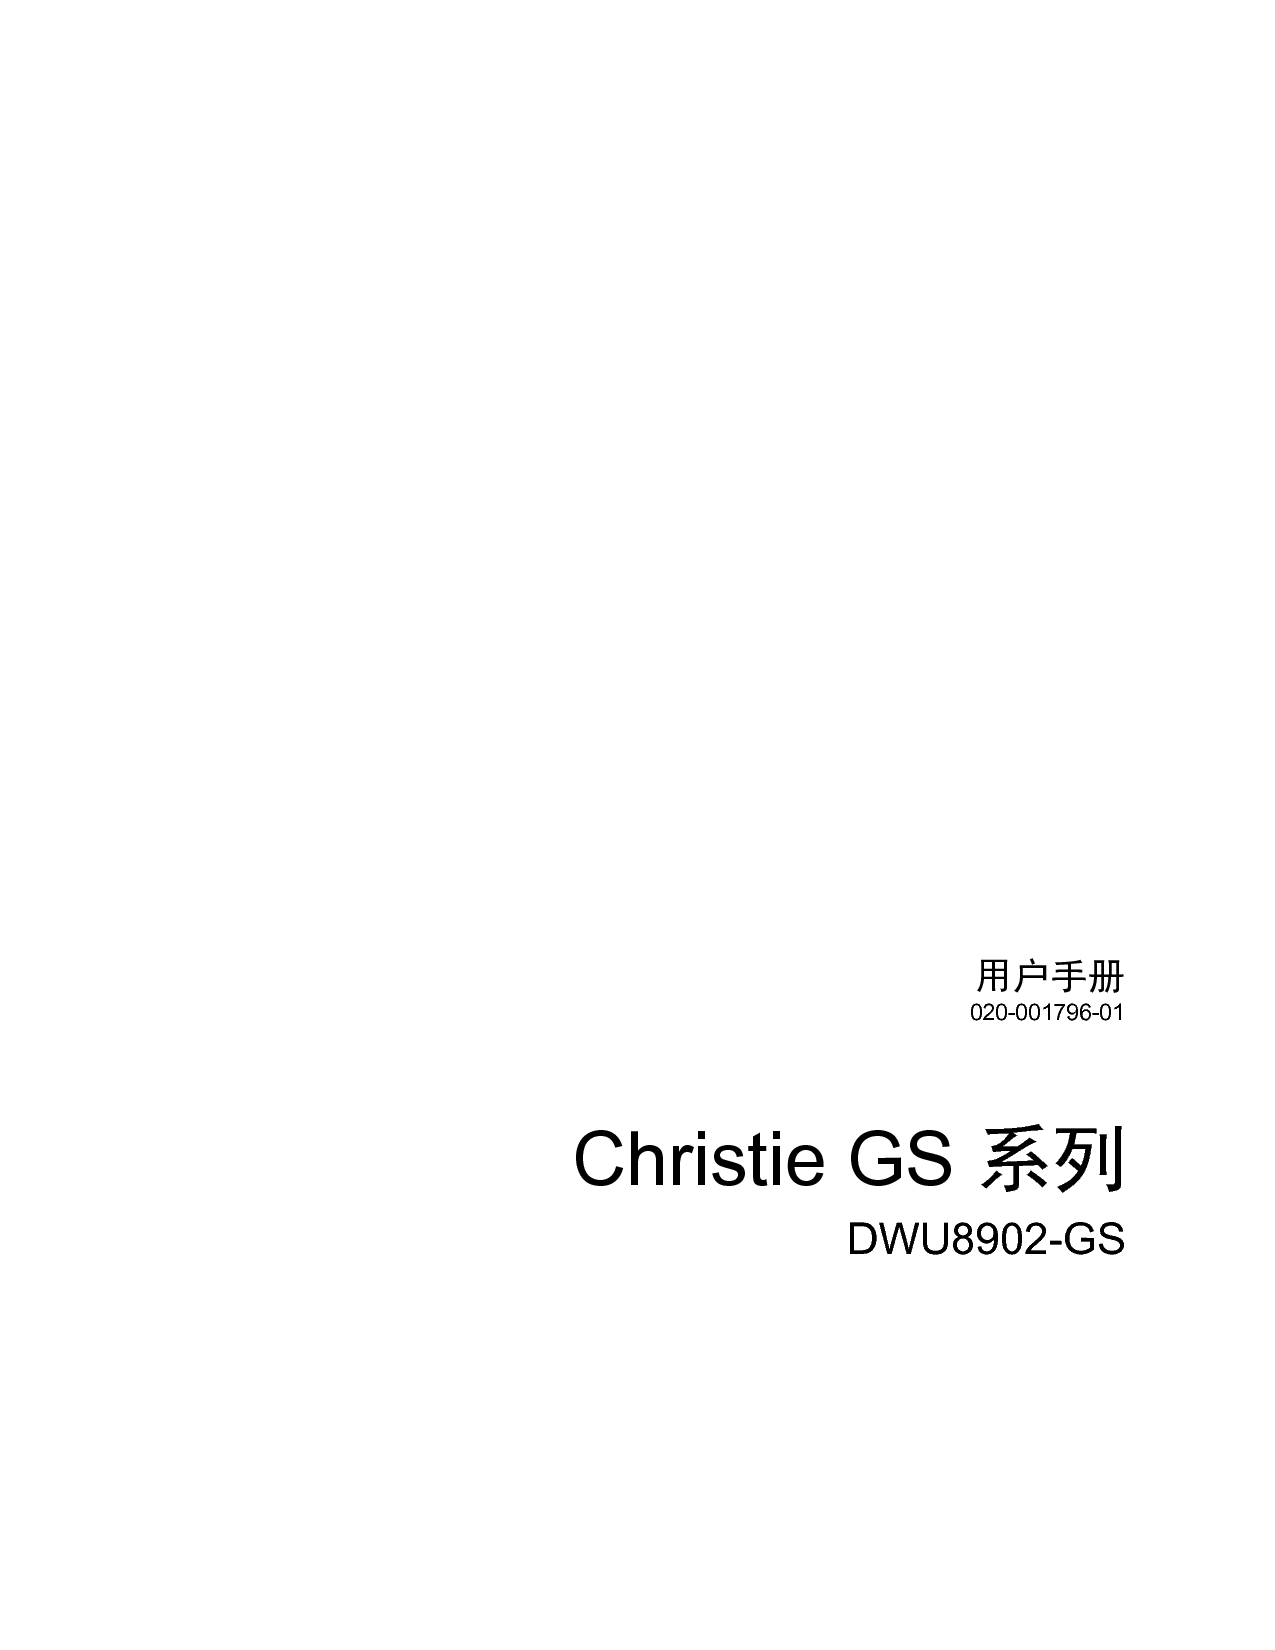 科视 Christie DWU8902-GS 用户手册 封面